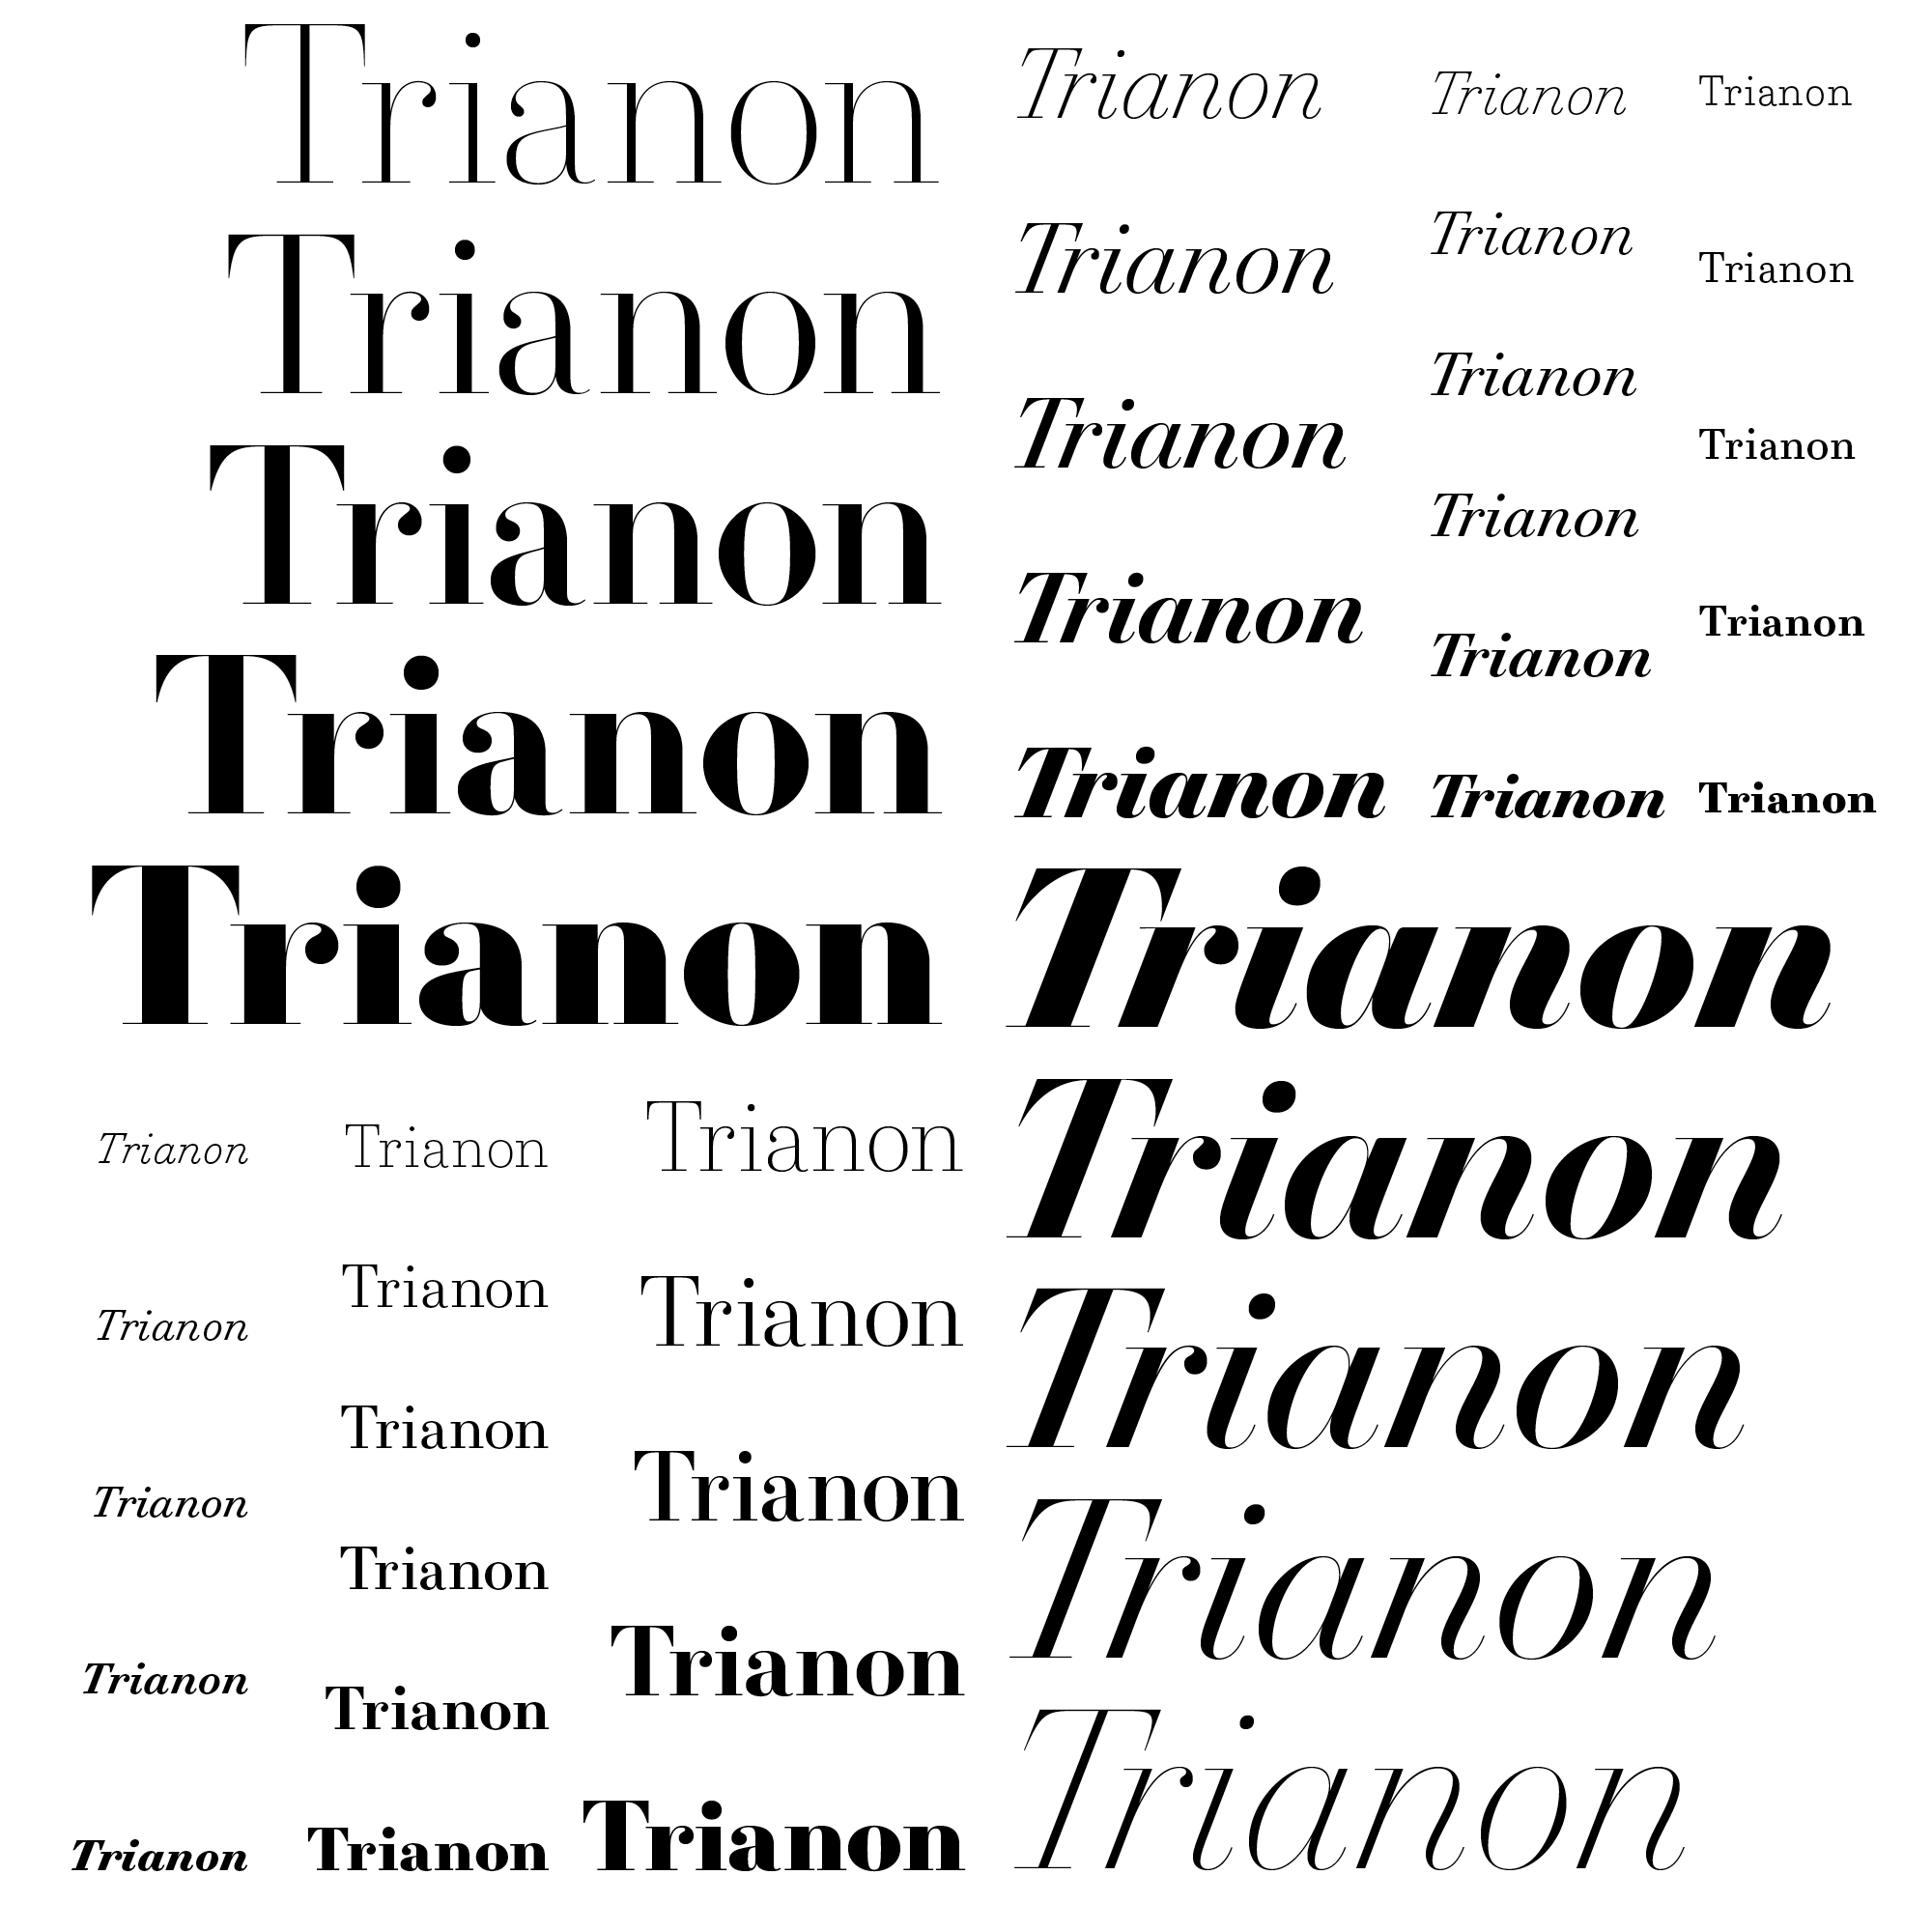 Trianon Typographica